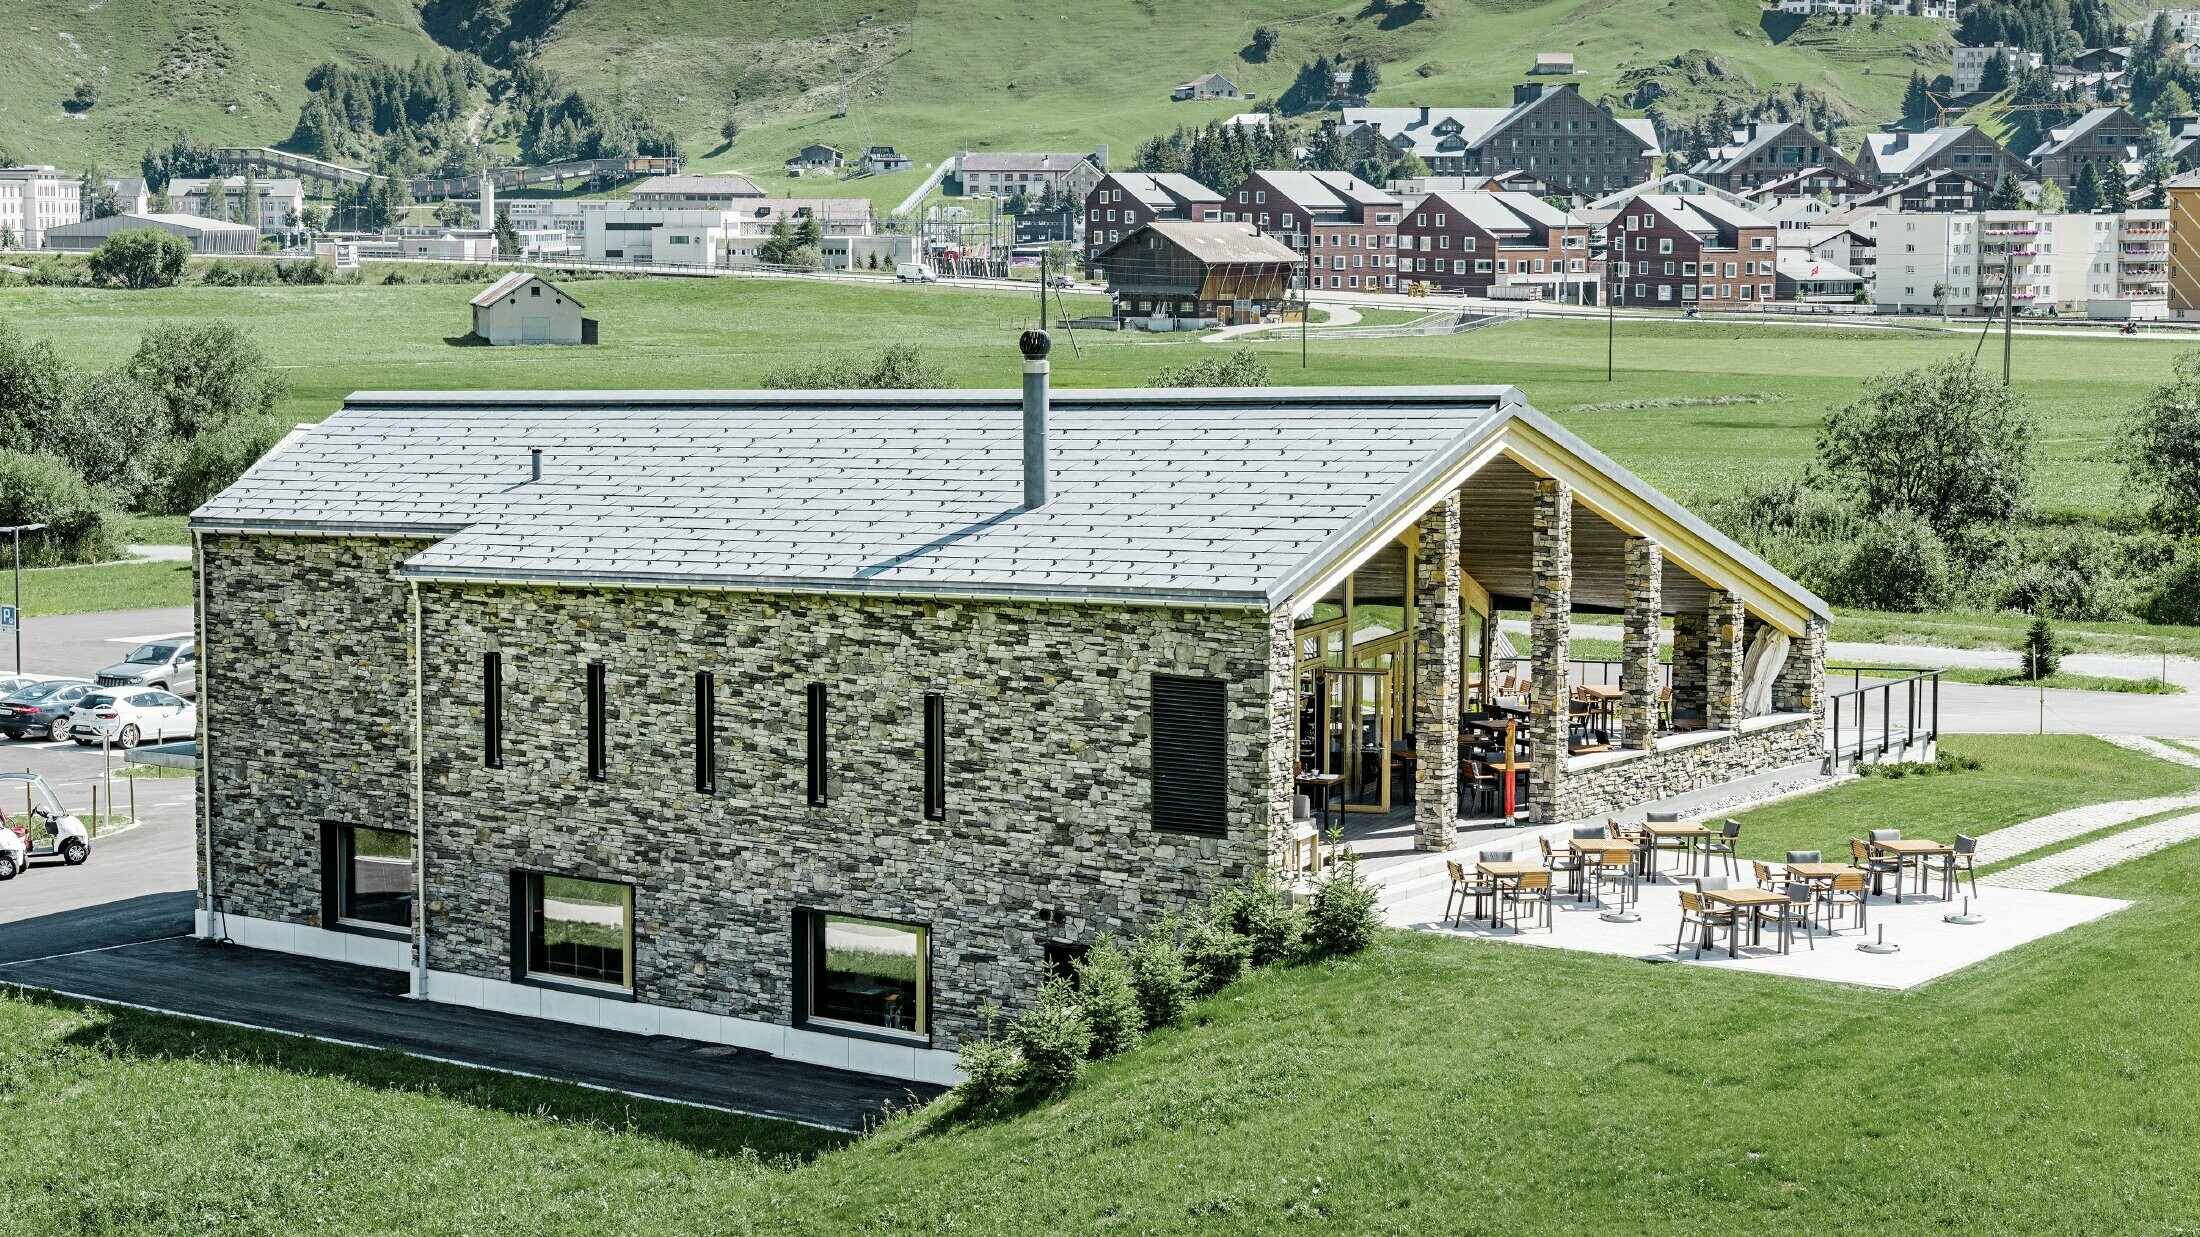 Club-house moderne du parcours de golf d’Andermatt en Suisse — Façade en pierre et panneaux de toiture FX.12 PREFA en aluminium de couleur gris pierre